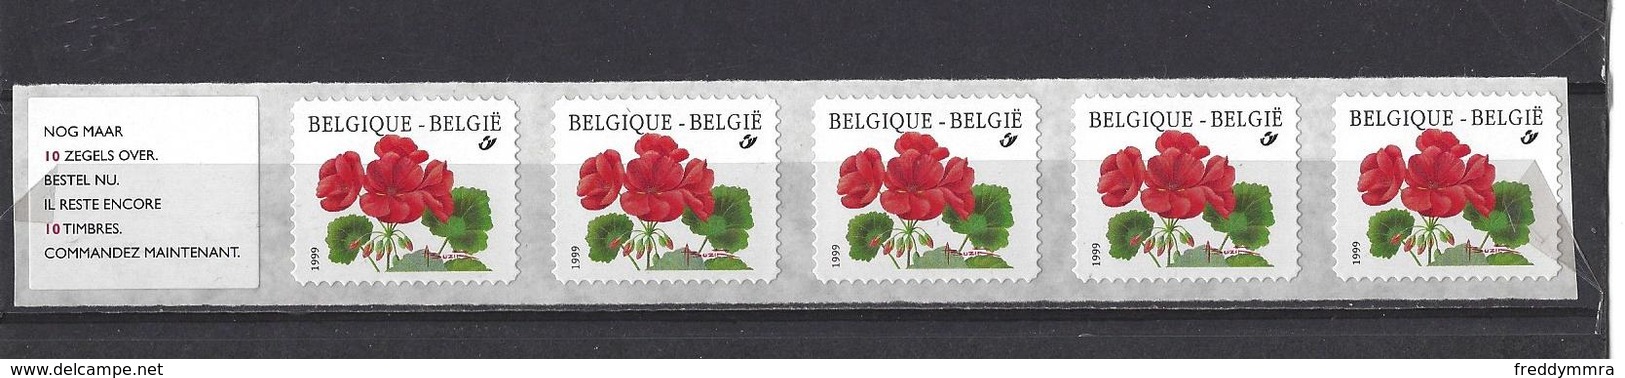 Belgique: R91  - Bande De 5  ** - Coil Stamps